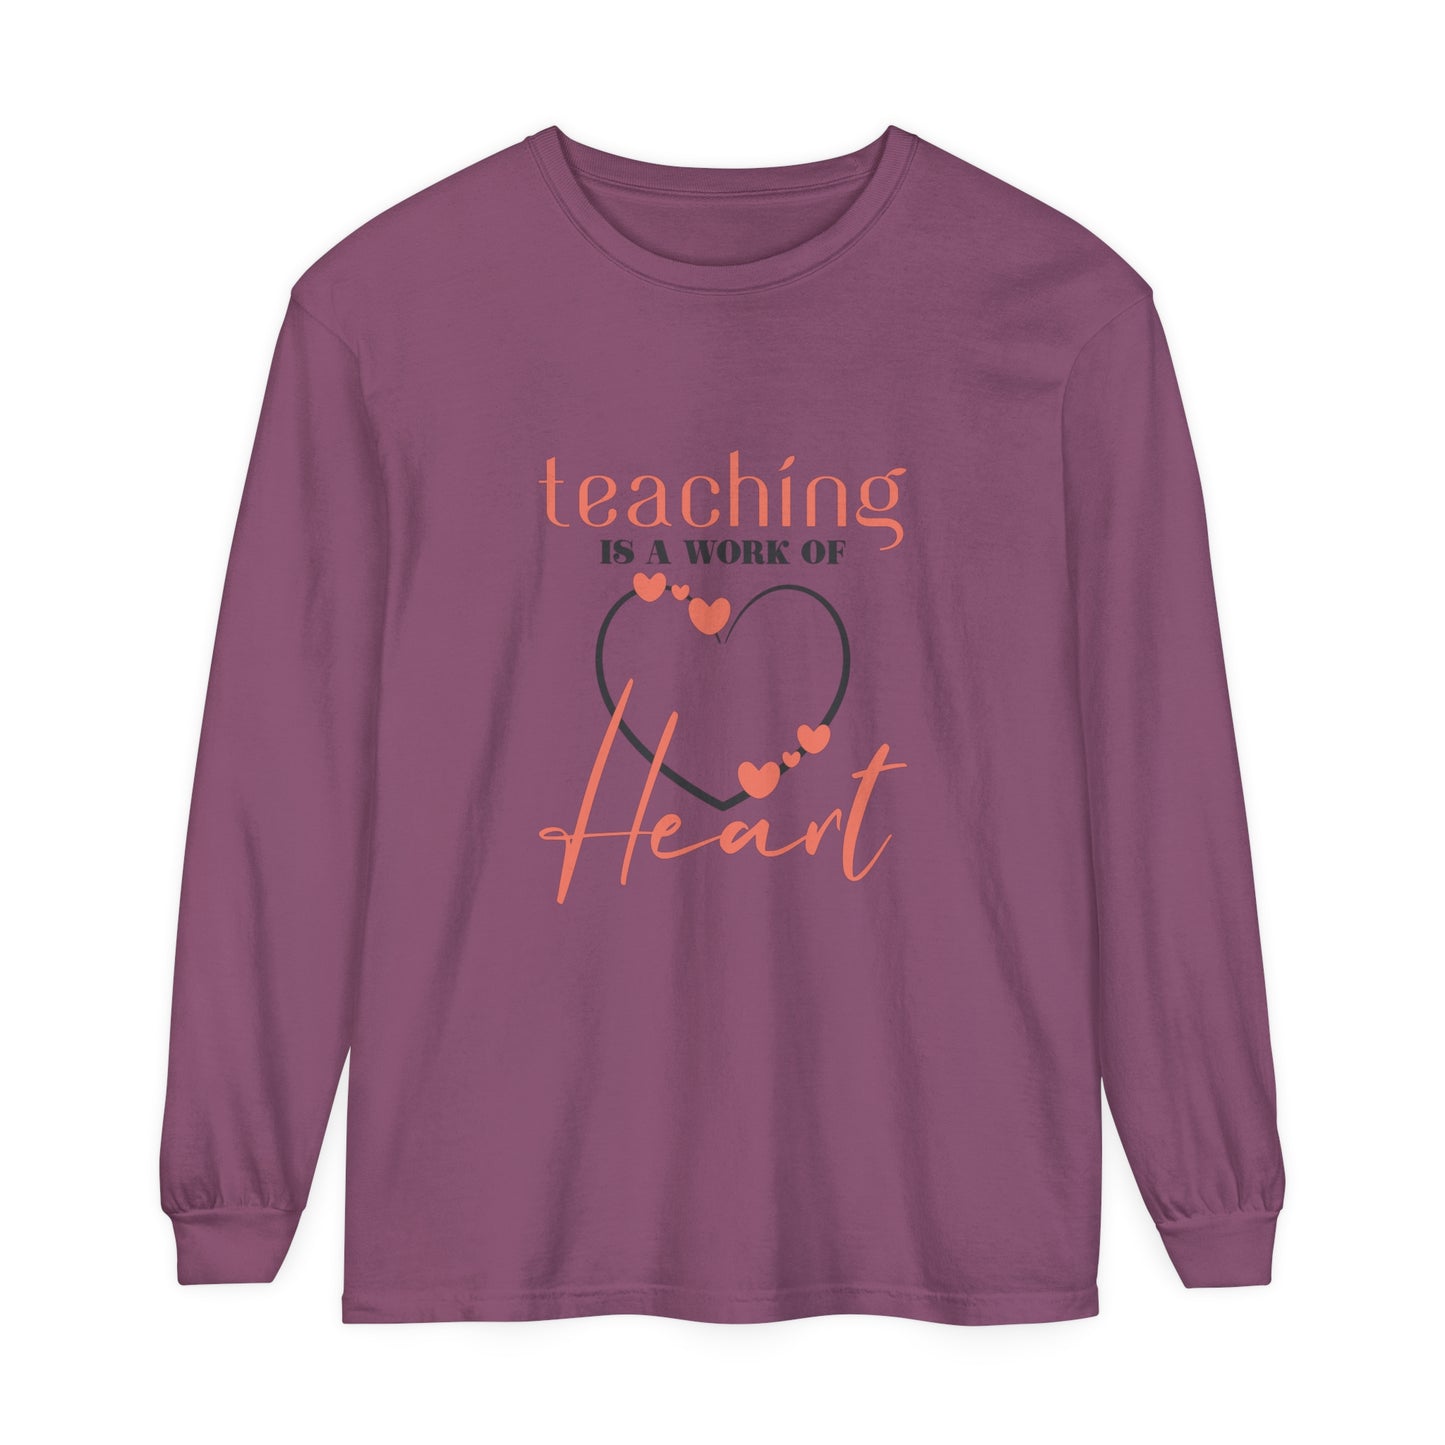 Teaching is a work of heart Women's Long Sleeve T-Shirt